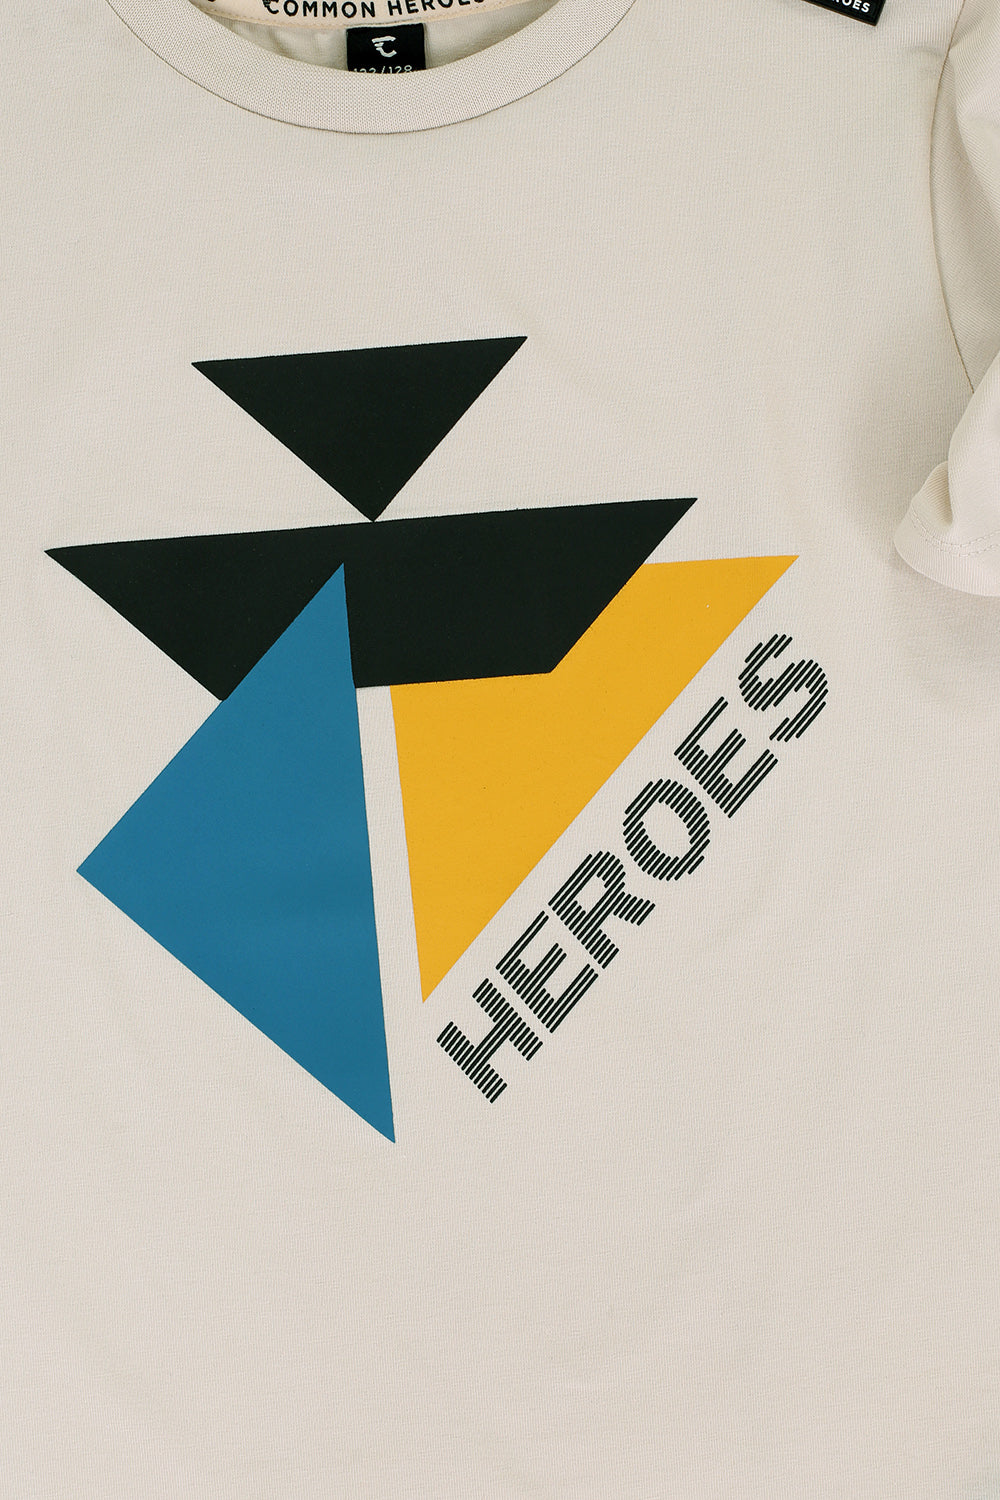 Jongens T-Shirt van Common Heroes in de kleur bone in maat 158-164.